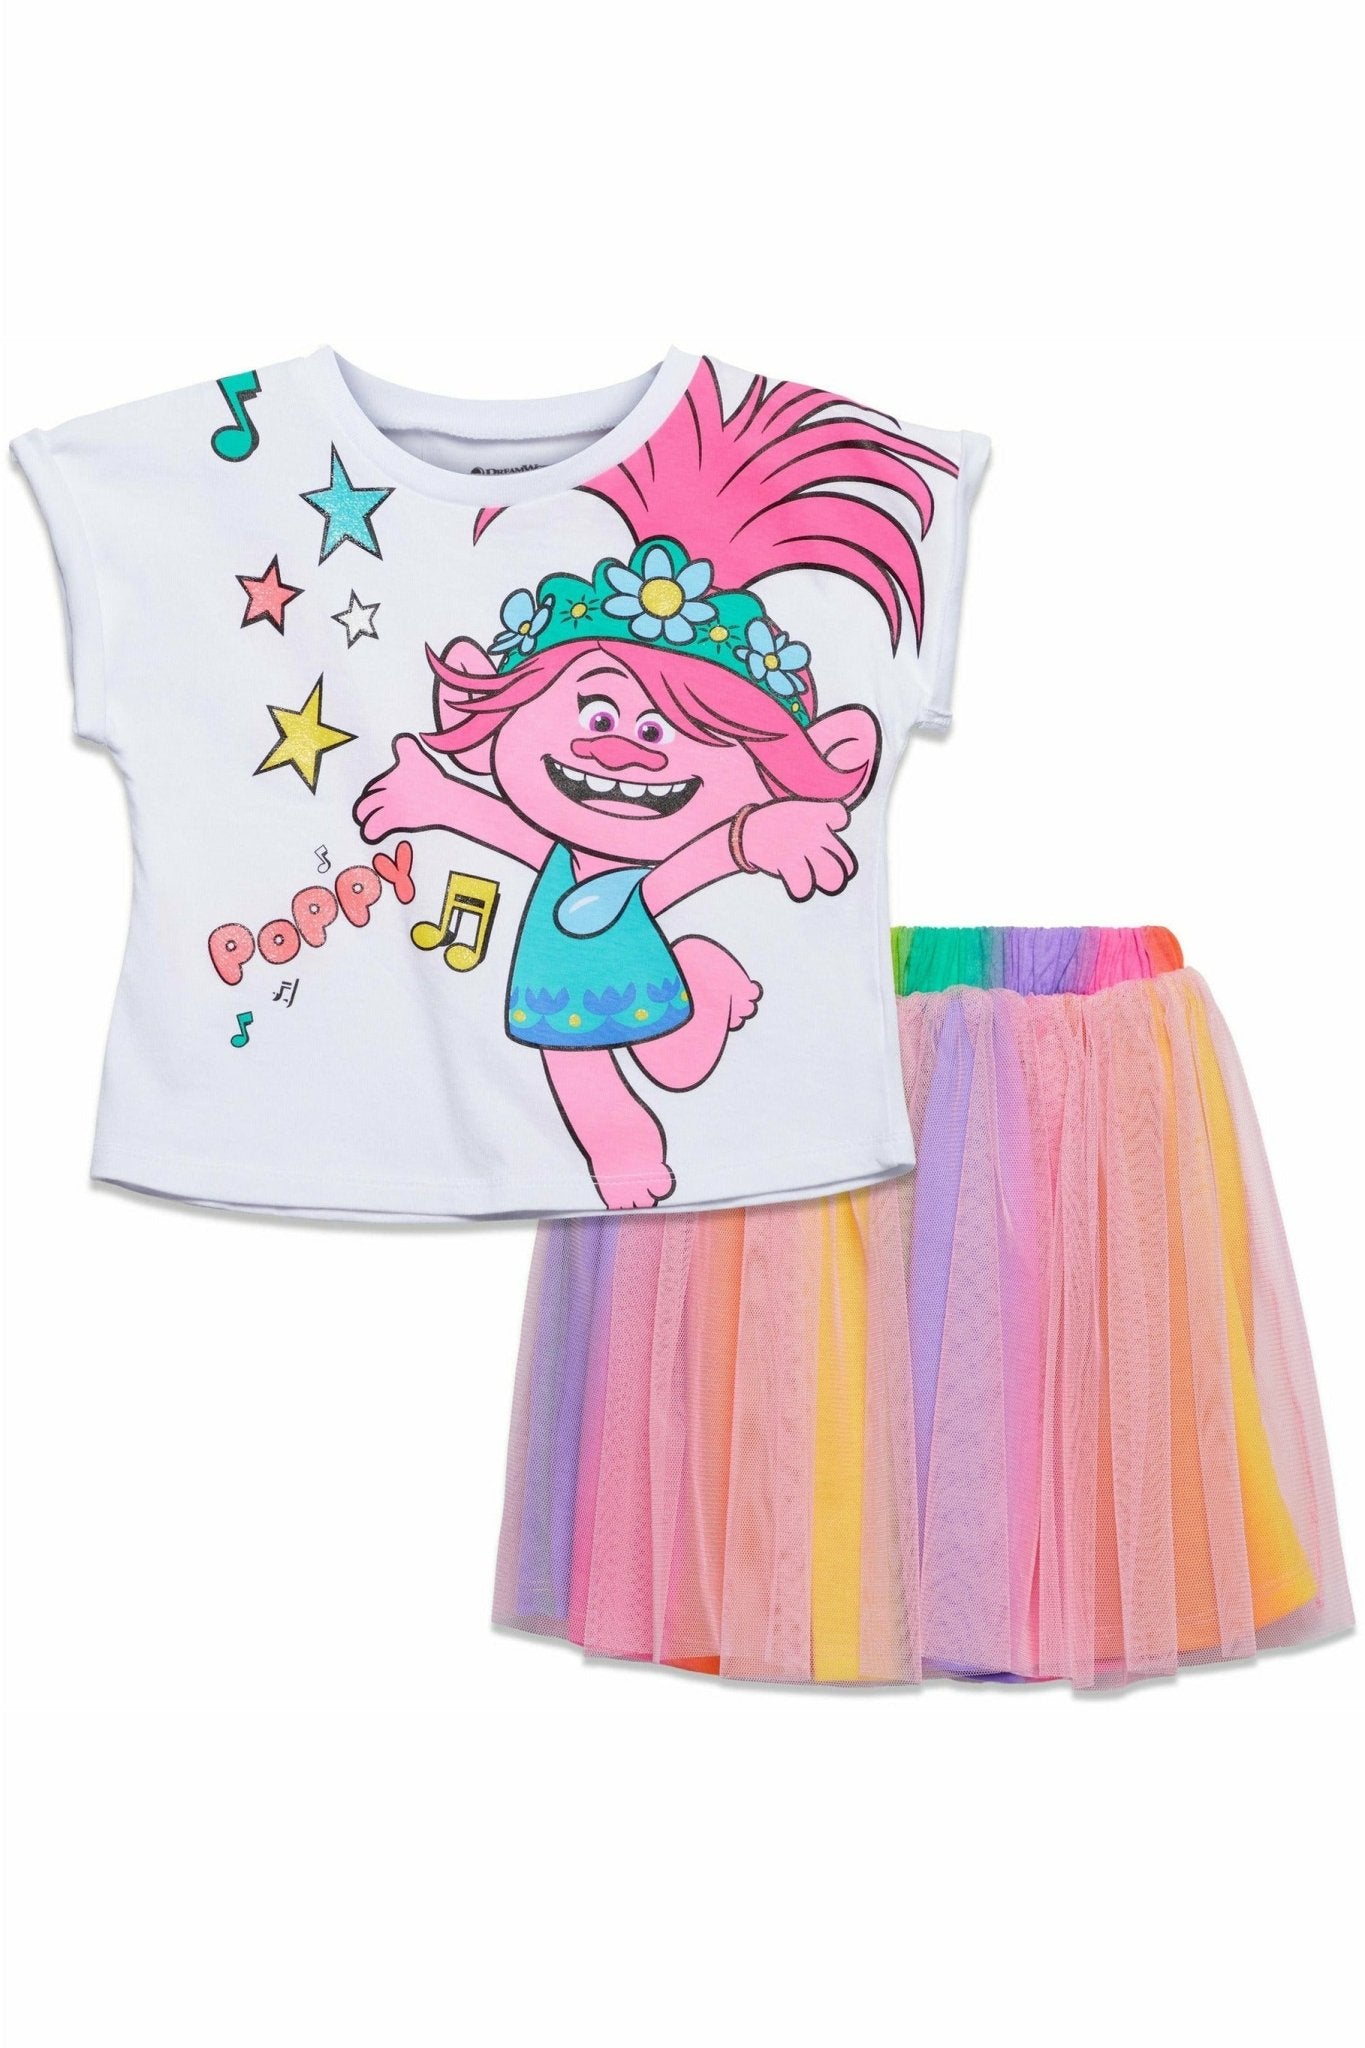 DreamWorks Trolls Poppy Short Sleeve T-Shirt Tutu Skirt Set - imagikids